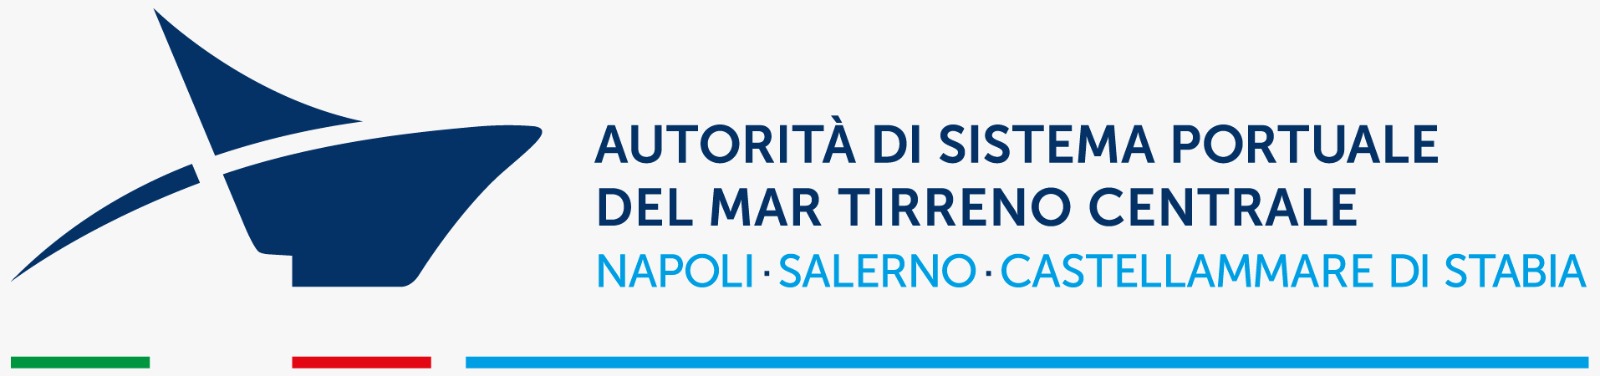 Autorità di sistema portuale del mar Tirreno centrale